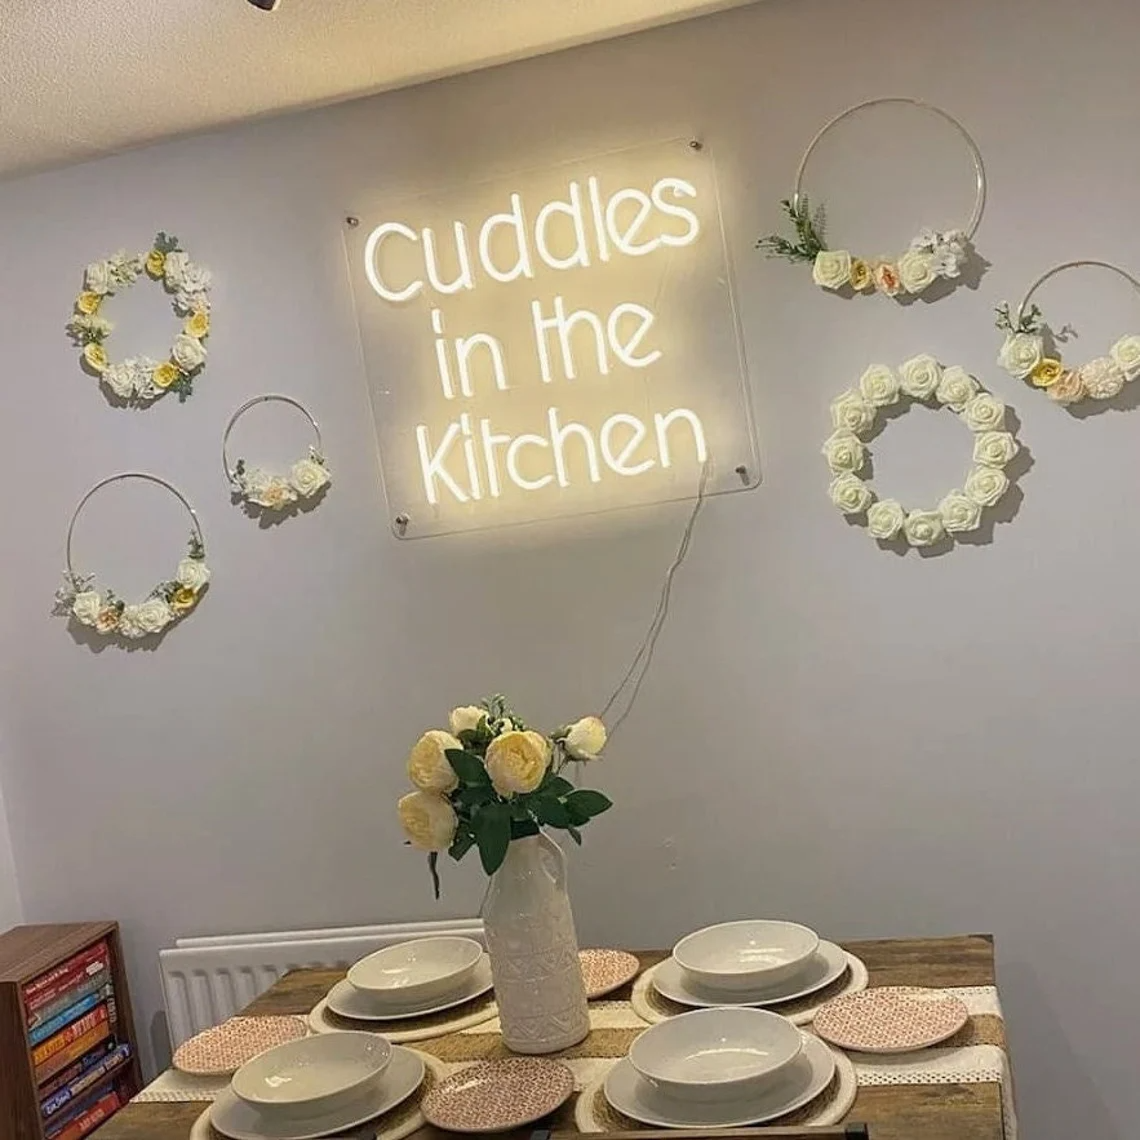 "Cuddles in the Kitchen" neon sign